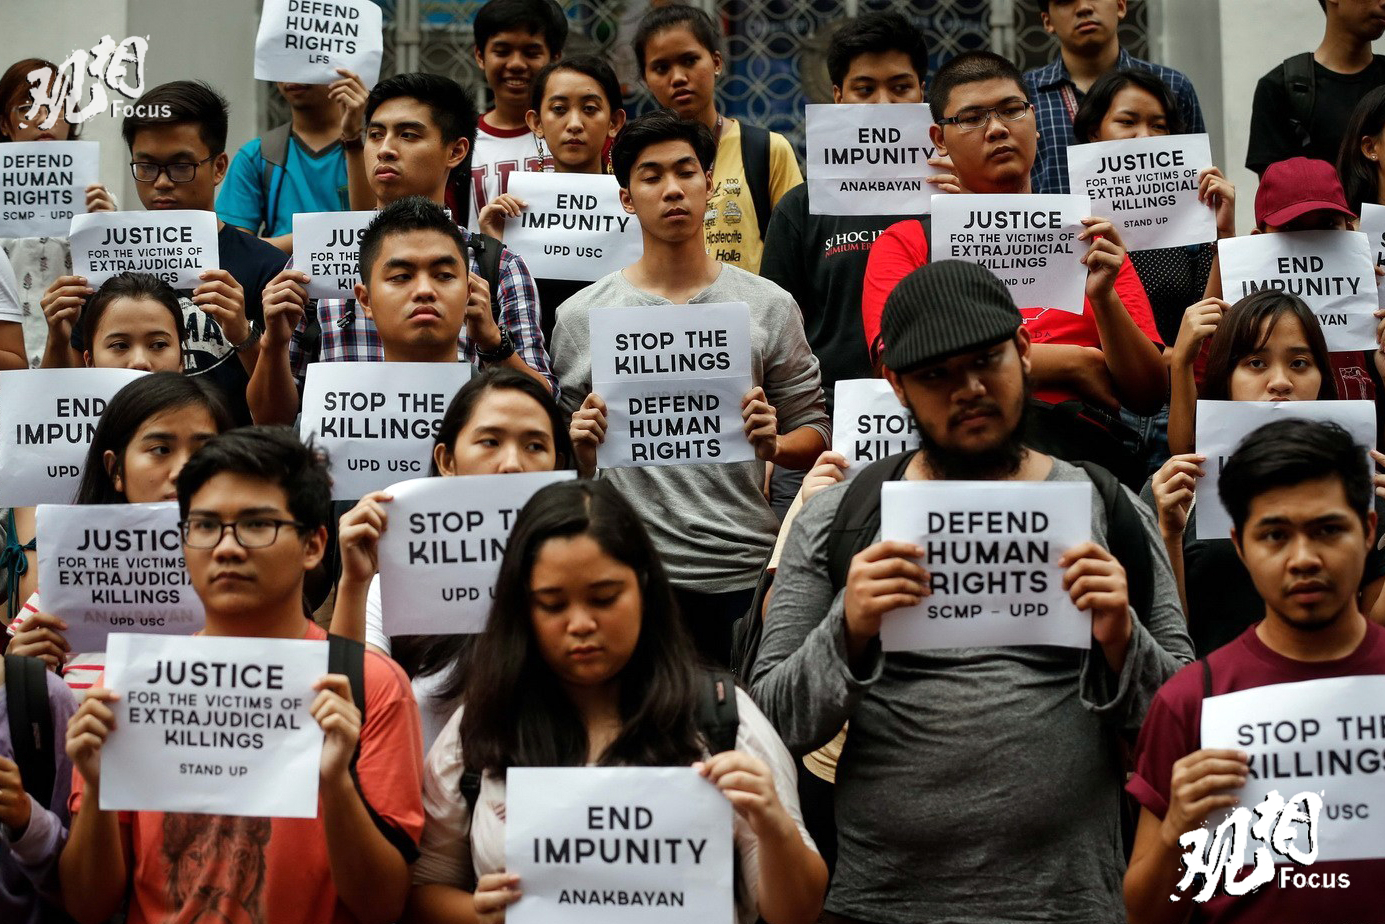 当地时间2016年8月11日，菲律宾奎松城，菲律宾大学学生及青年团体参加点烛抗议活动，抗议对毒贩处以私刑，呼吁法律制裁。自菲律宾总统杜特尔特发起禁毒运动起，已有超过800名与毒品相关的嫌疑人被杀死，另有近60万人向当局自首。